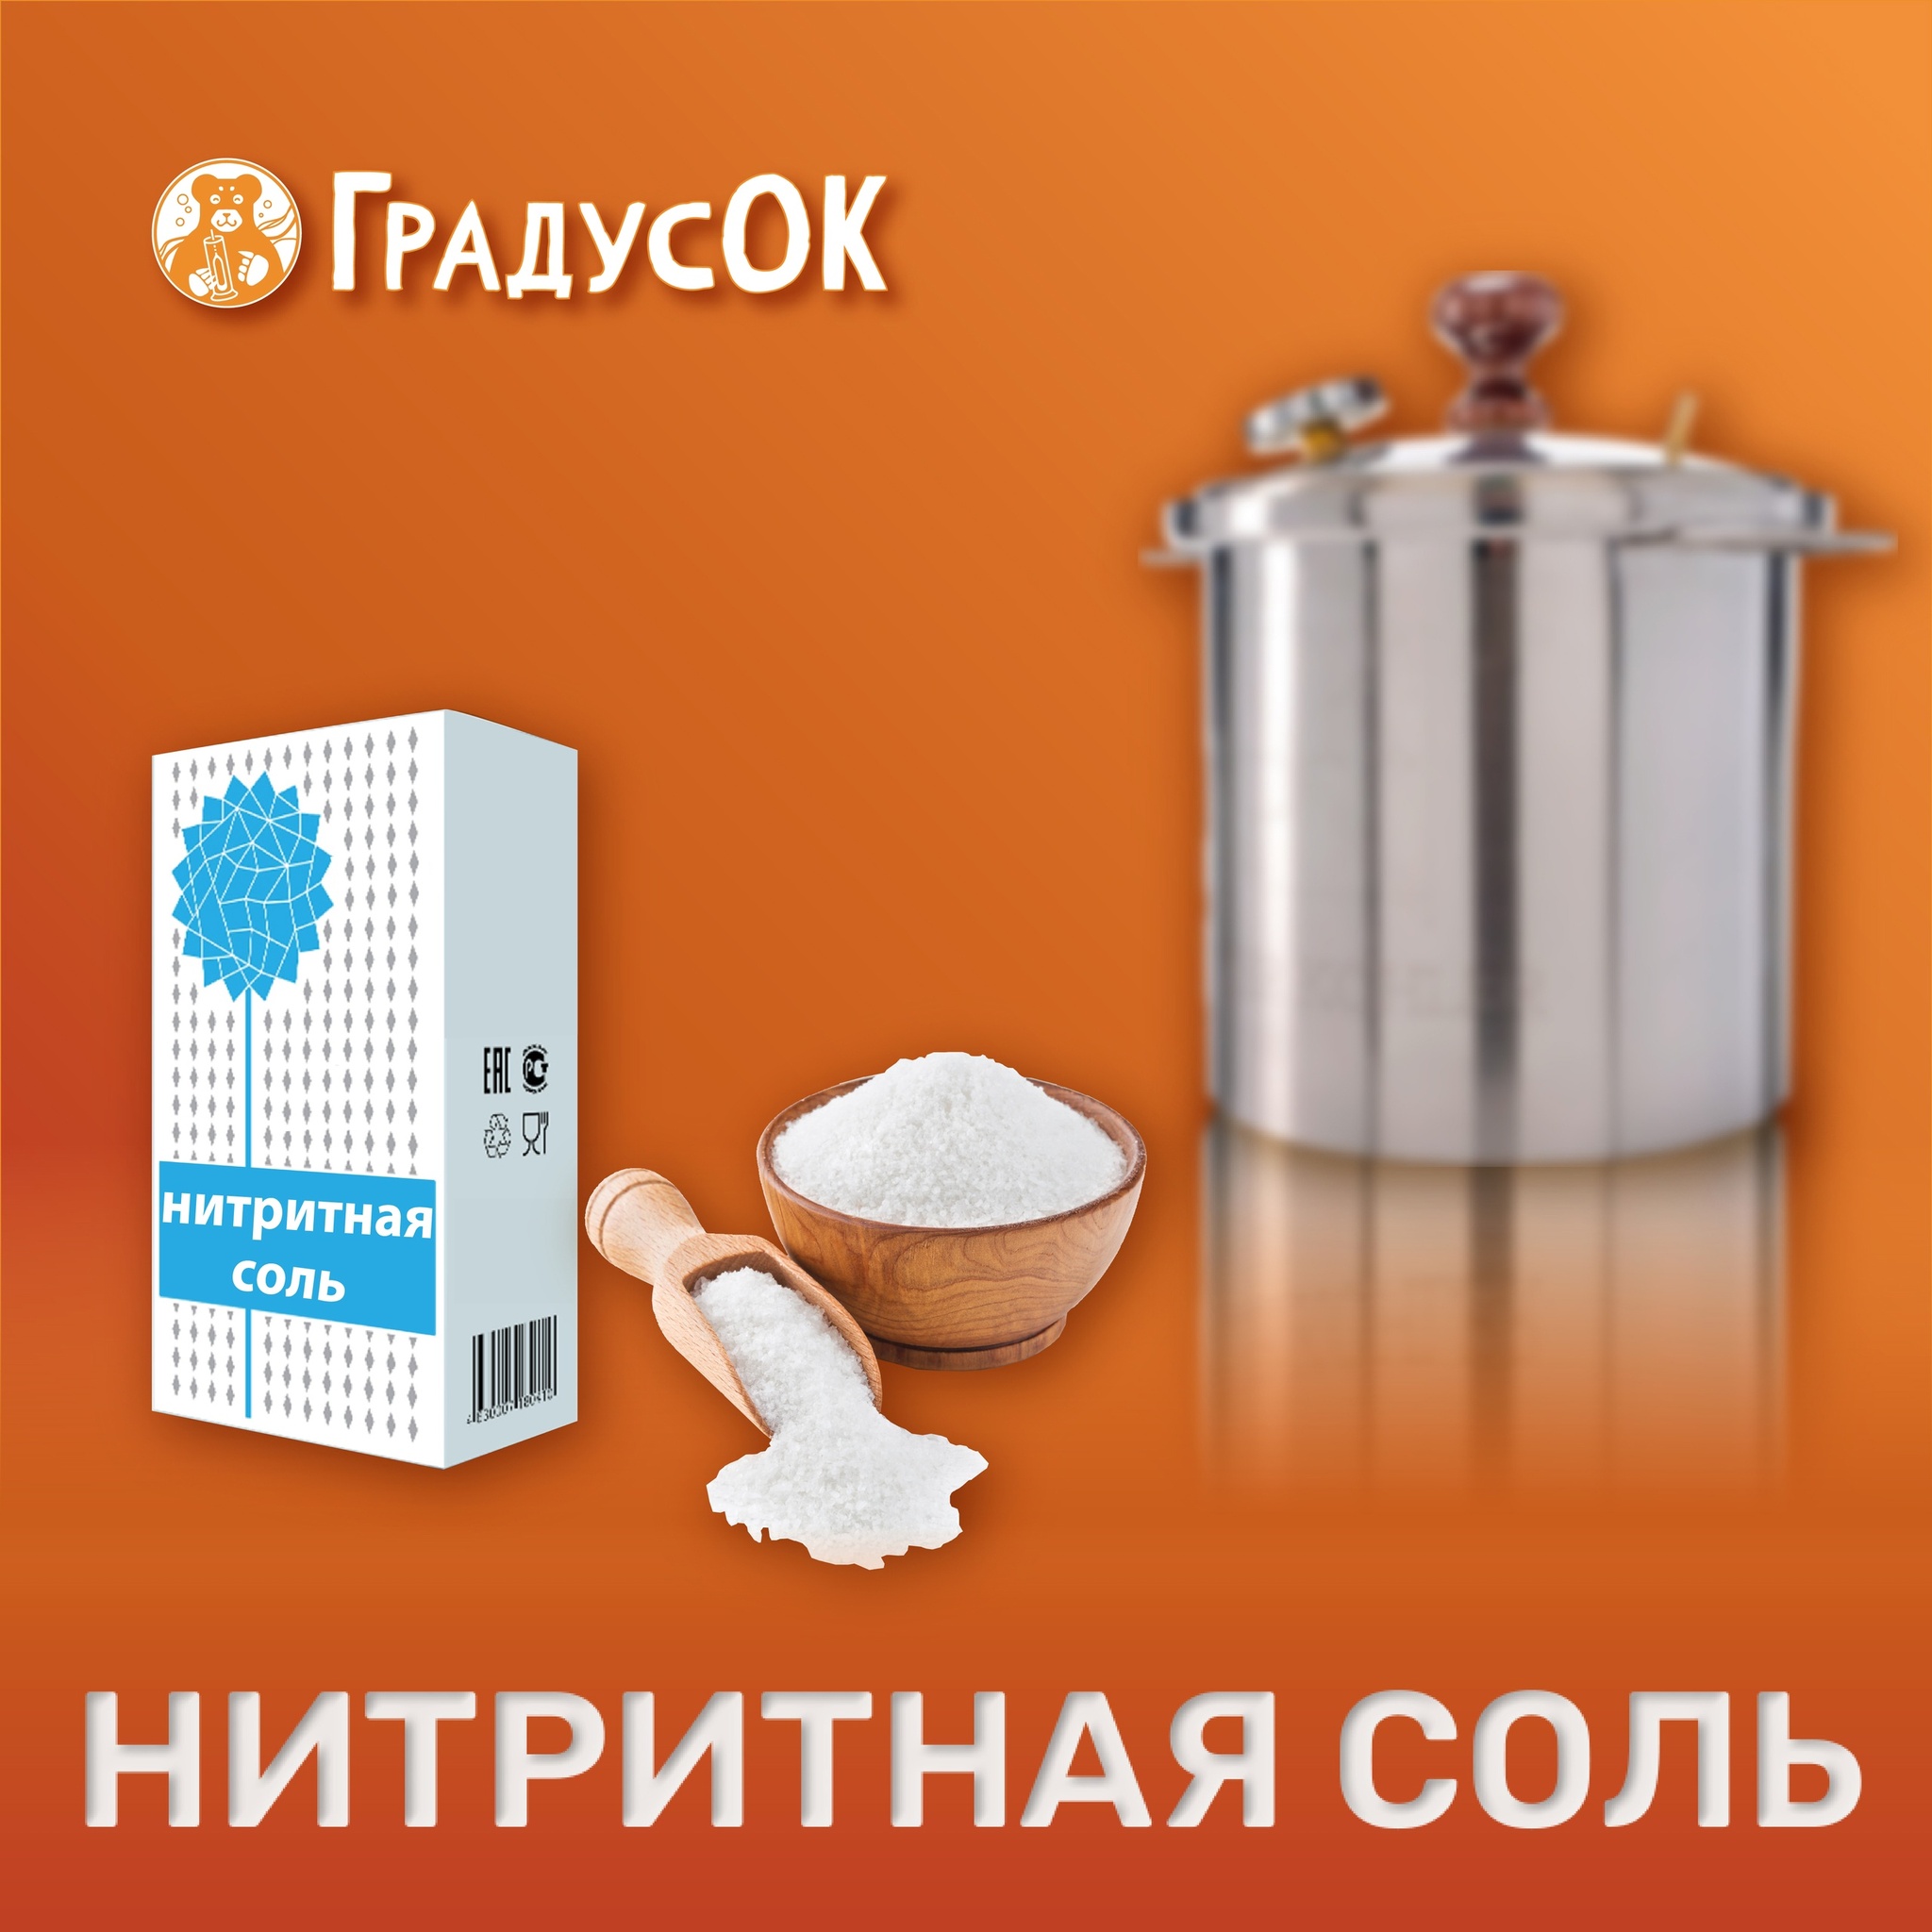 Нитритная соль – смесь нитрита натрия с очищенной кухонной солью